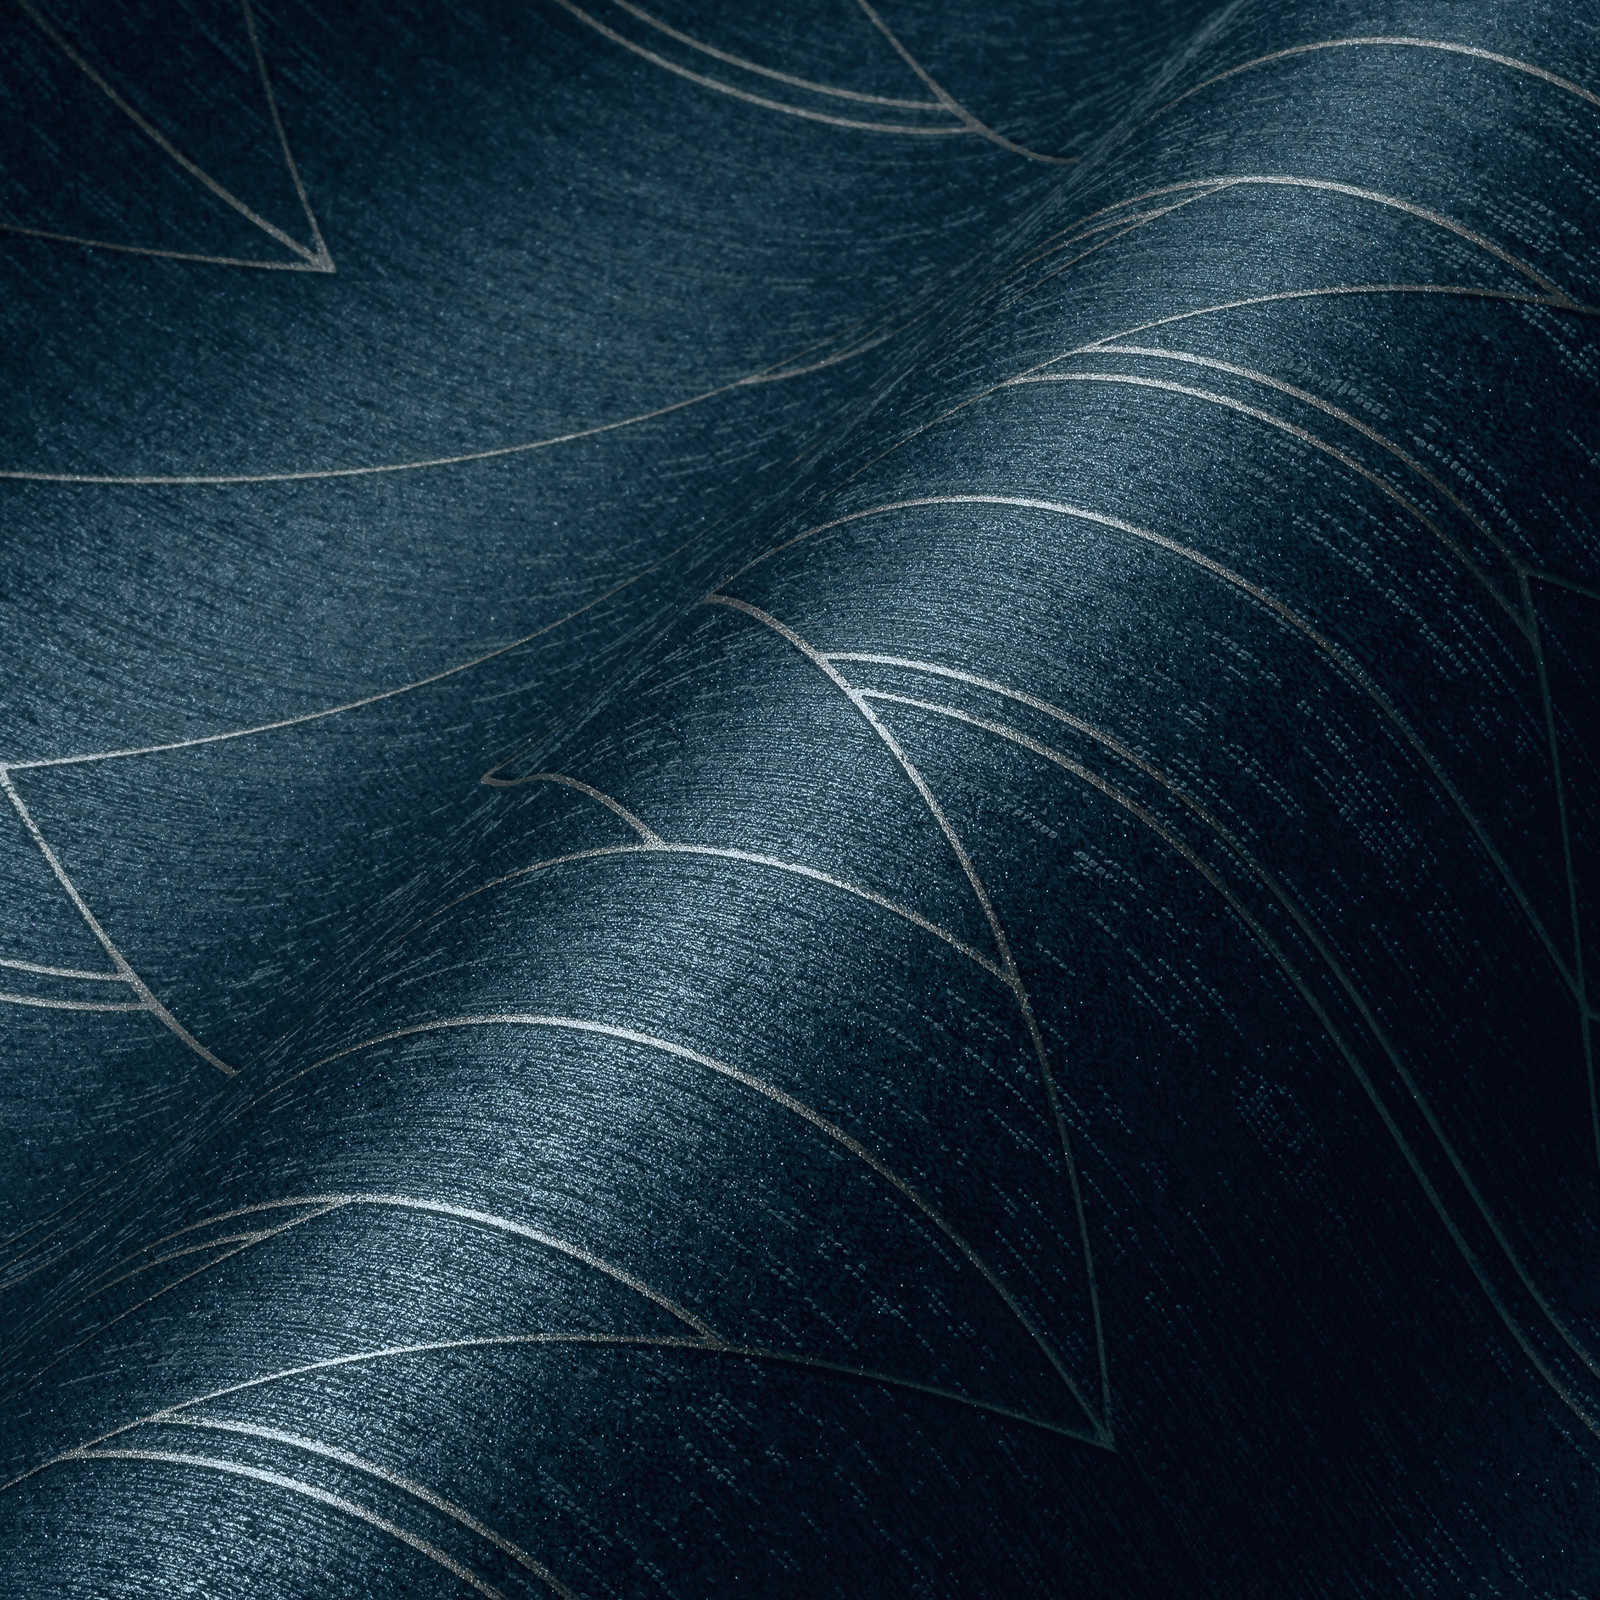             Donkerblauw behang met zilver grafisch patroon & glanzend effect - Blauw, Metallic
        